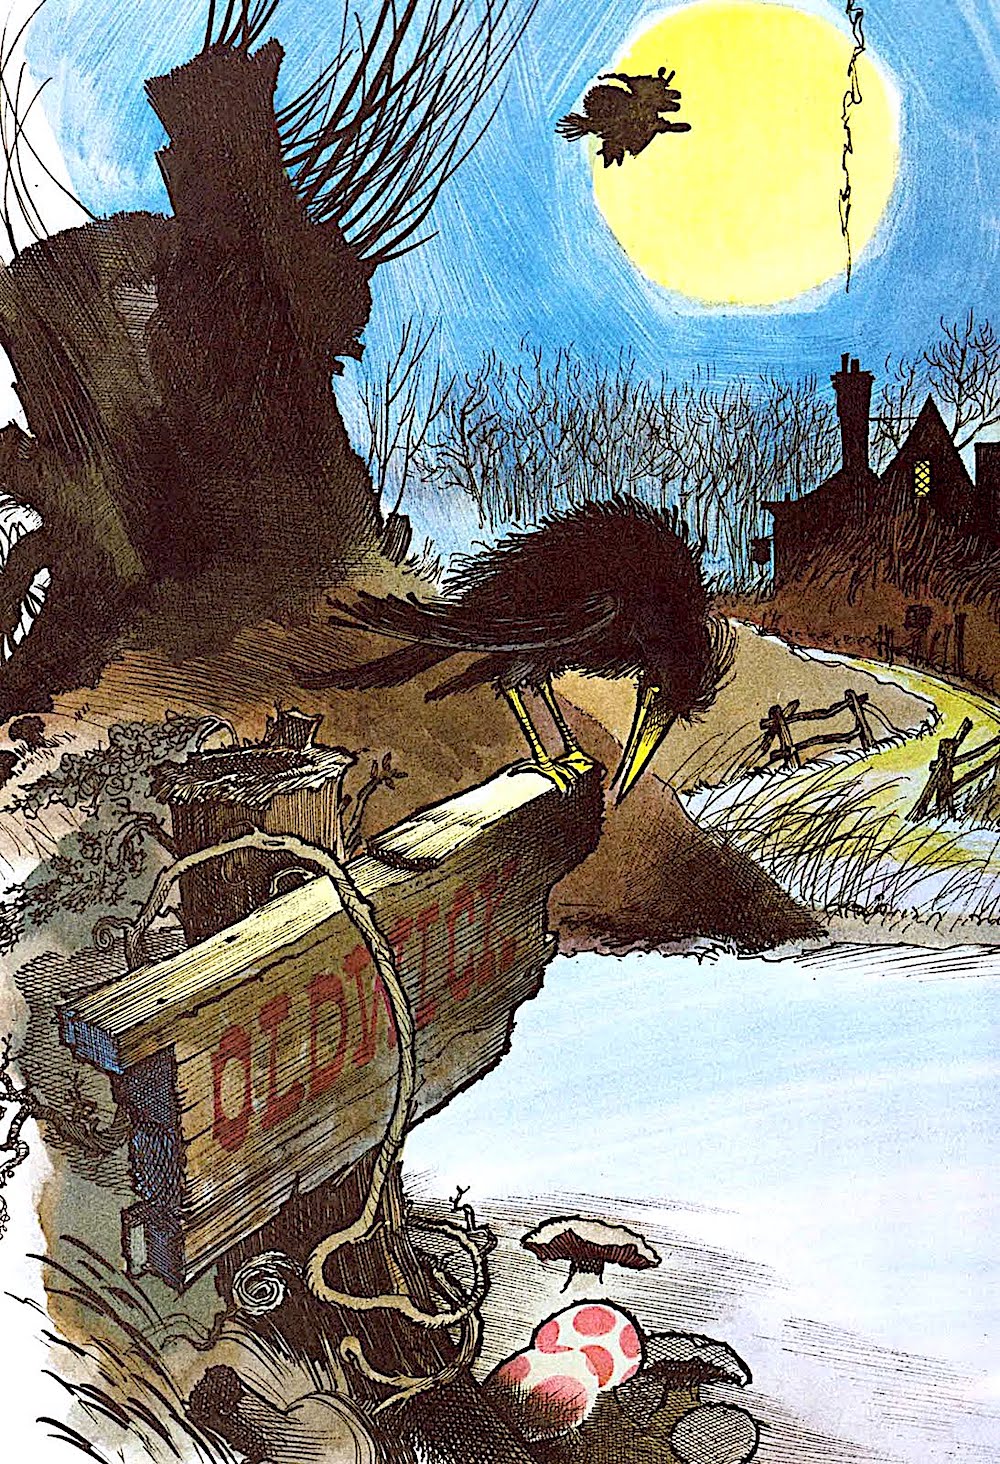 a children's book illustration by Wende & Harry Devlin 1963